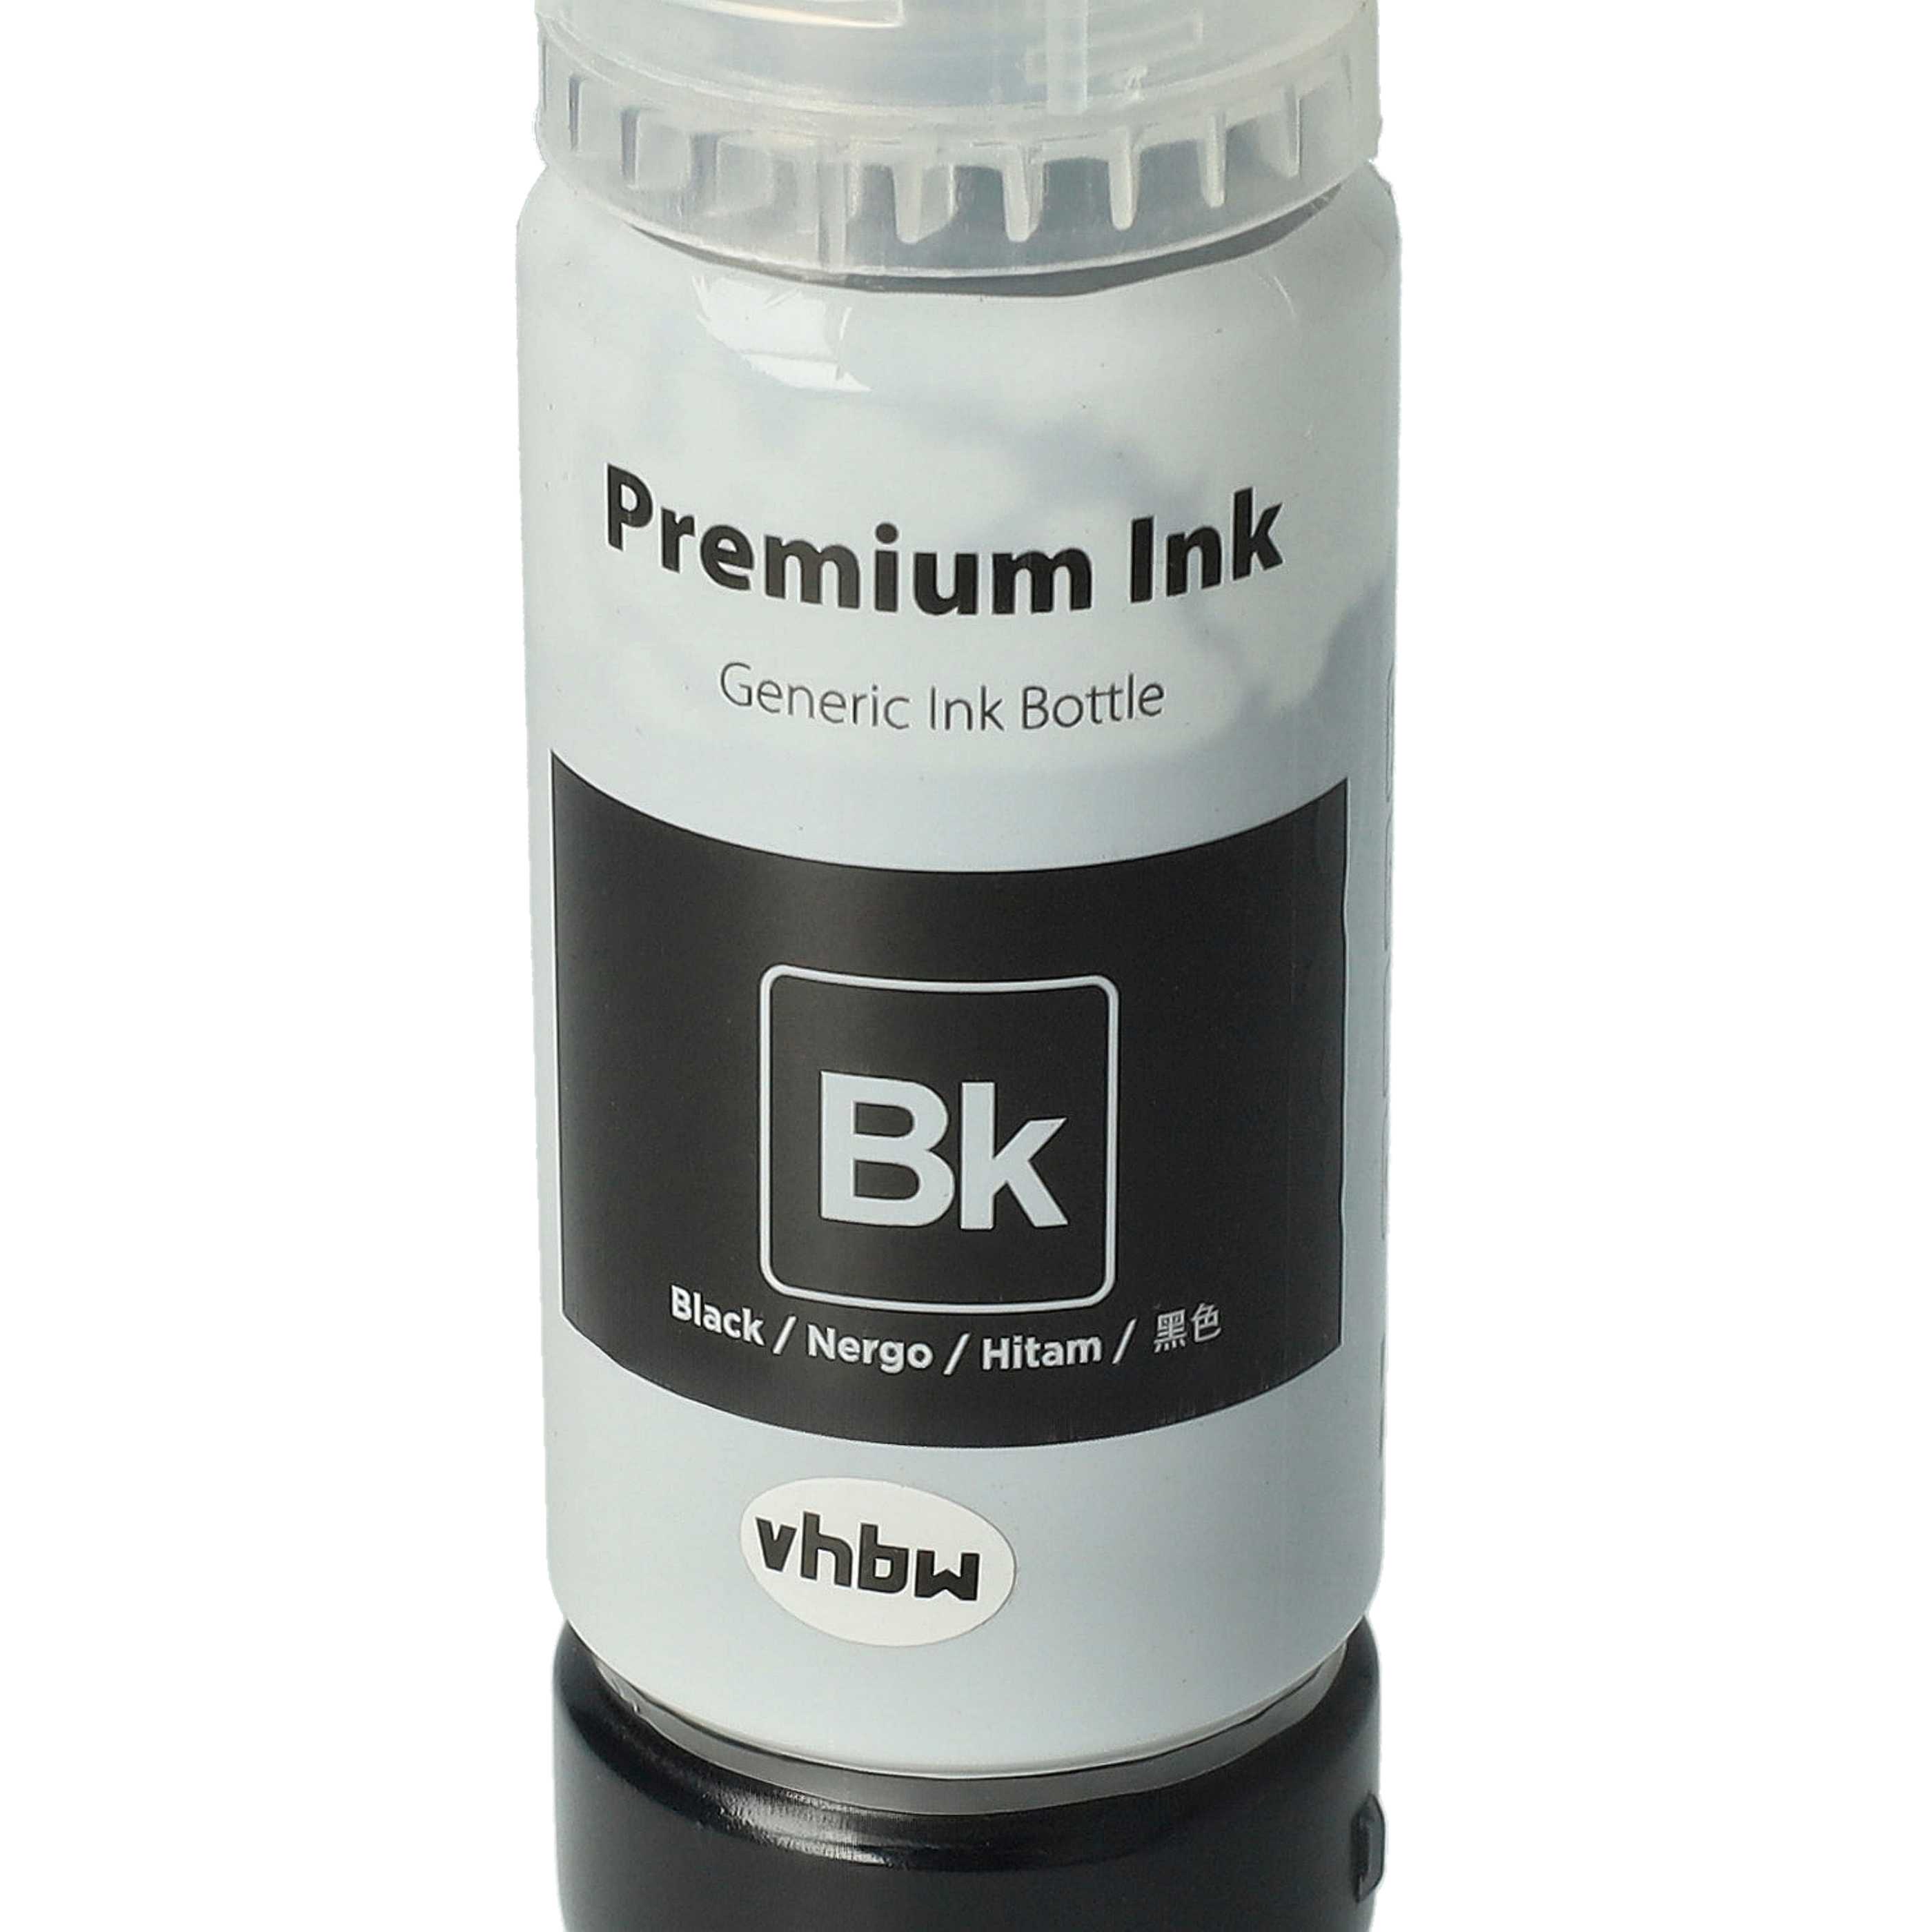 Encre rechargable noire dye remplace Epson 102 black dye pour imprimante Epson, 70ml